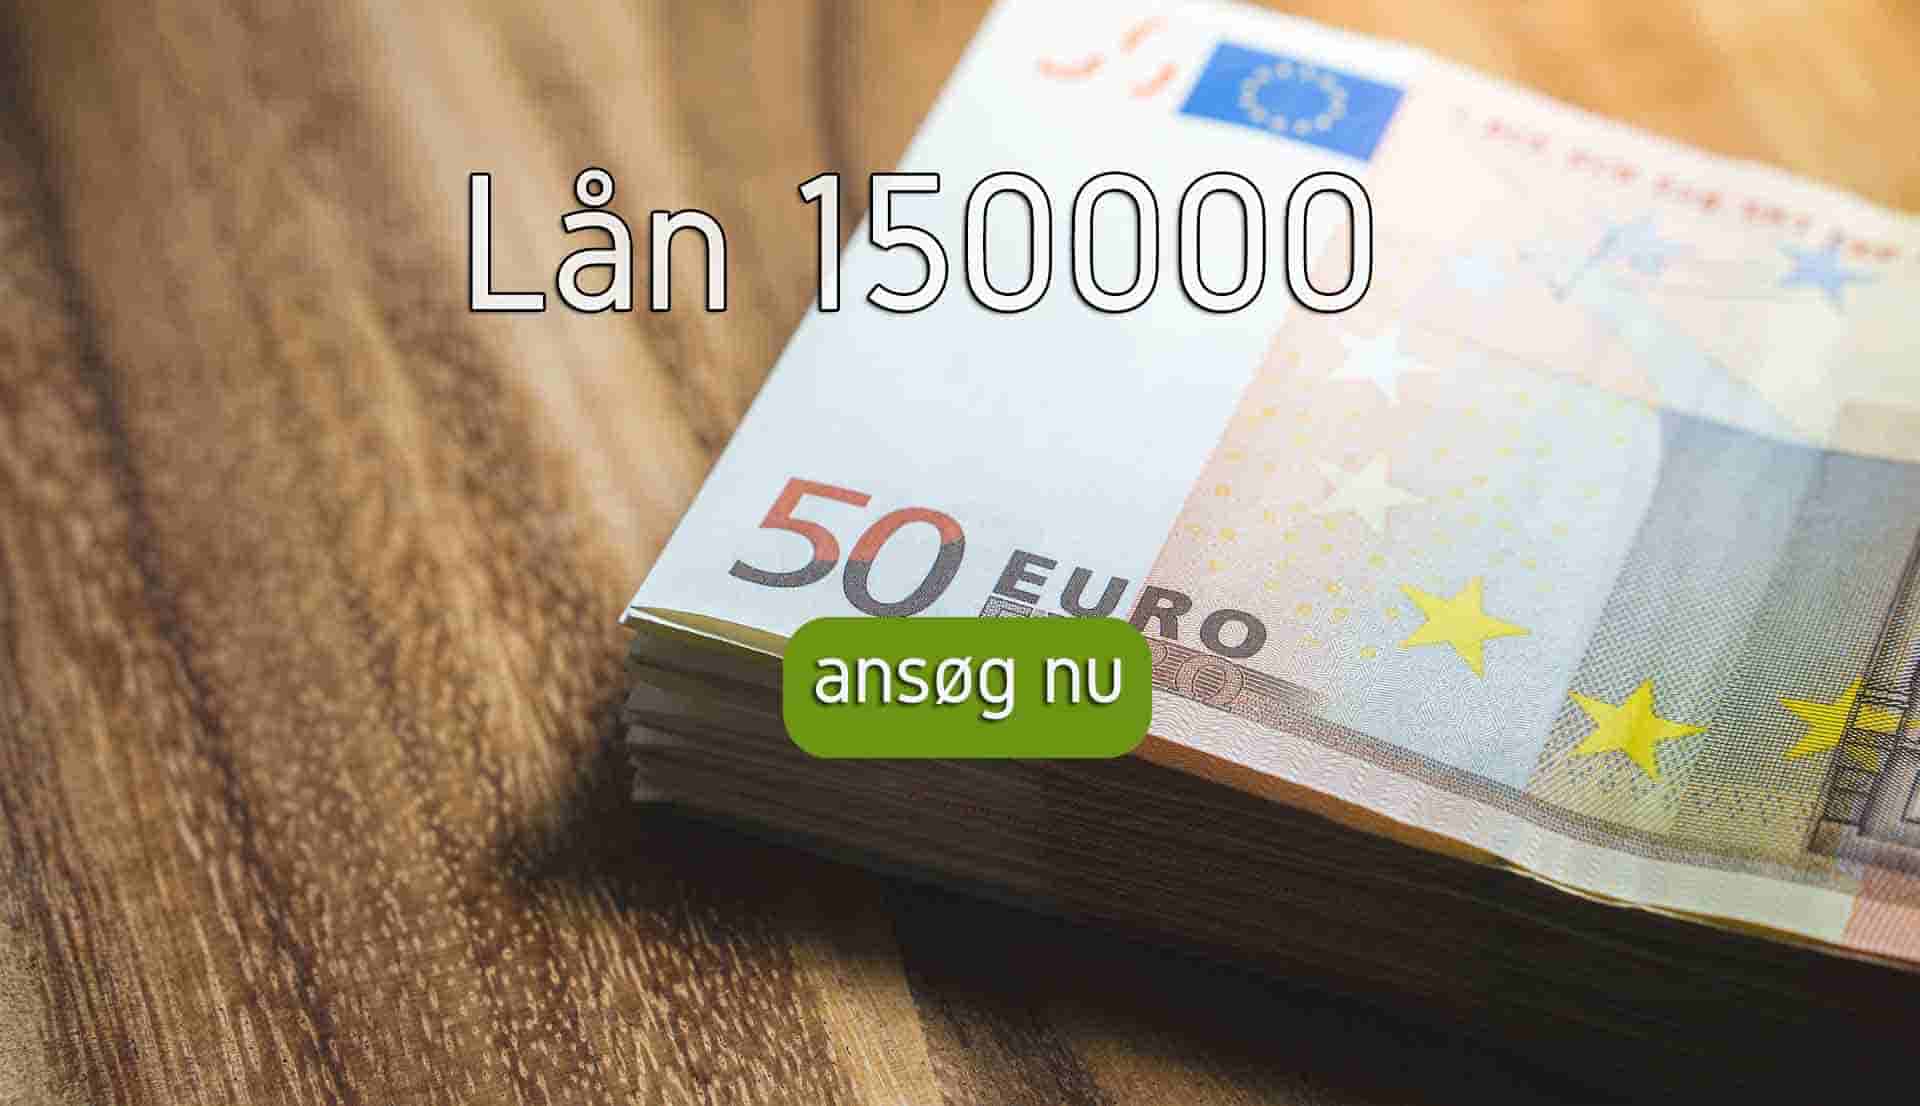 s4 Lån 150000